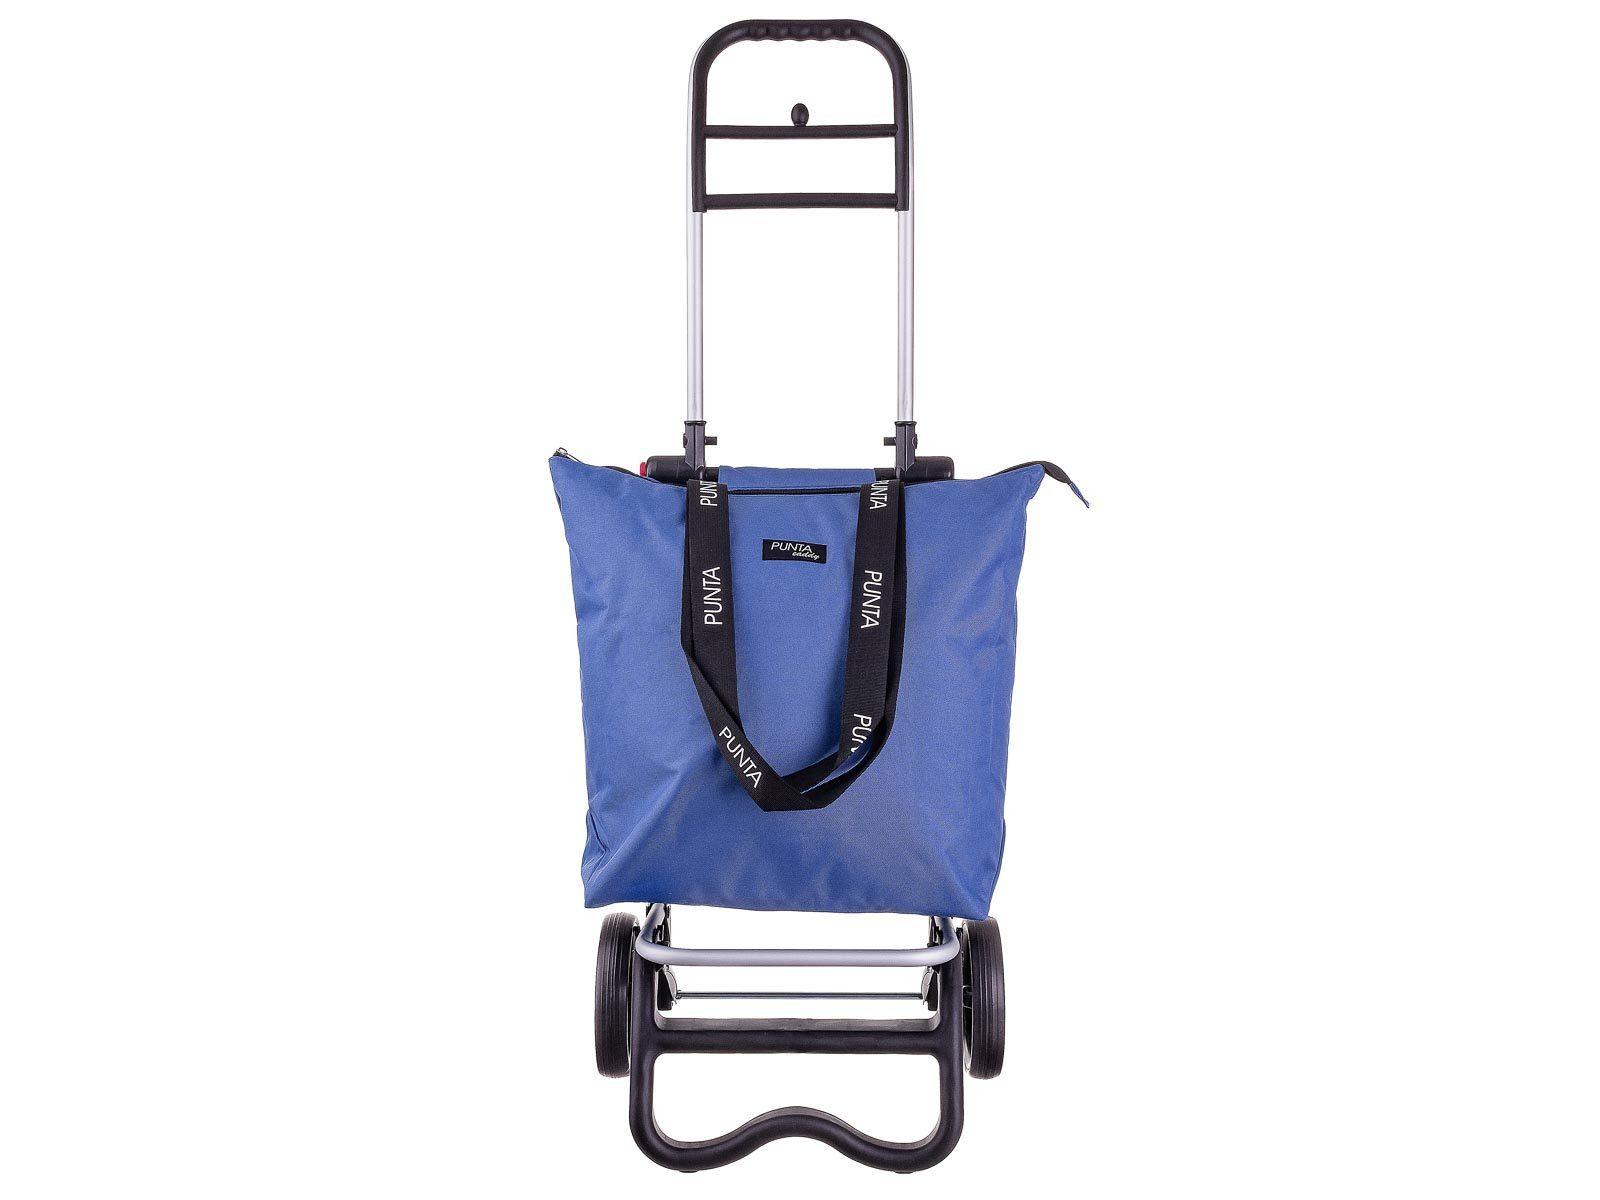 fabrizio® Einkaufstrolley 10430 Alu-Shopper Punta caddy mit Kühlfach, 36 l, Kühlfach graublau